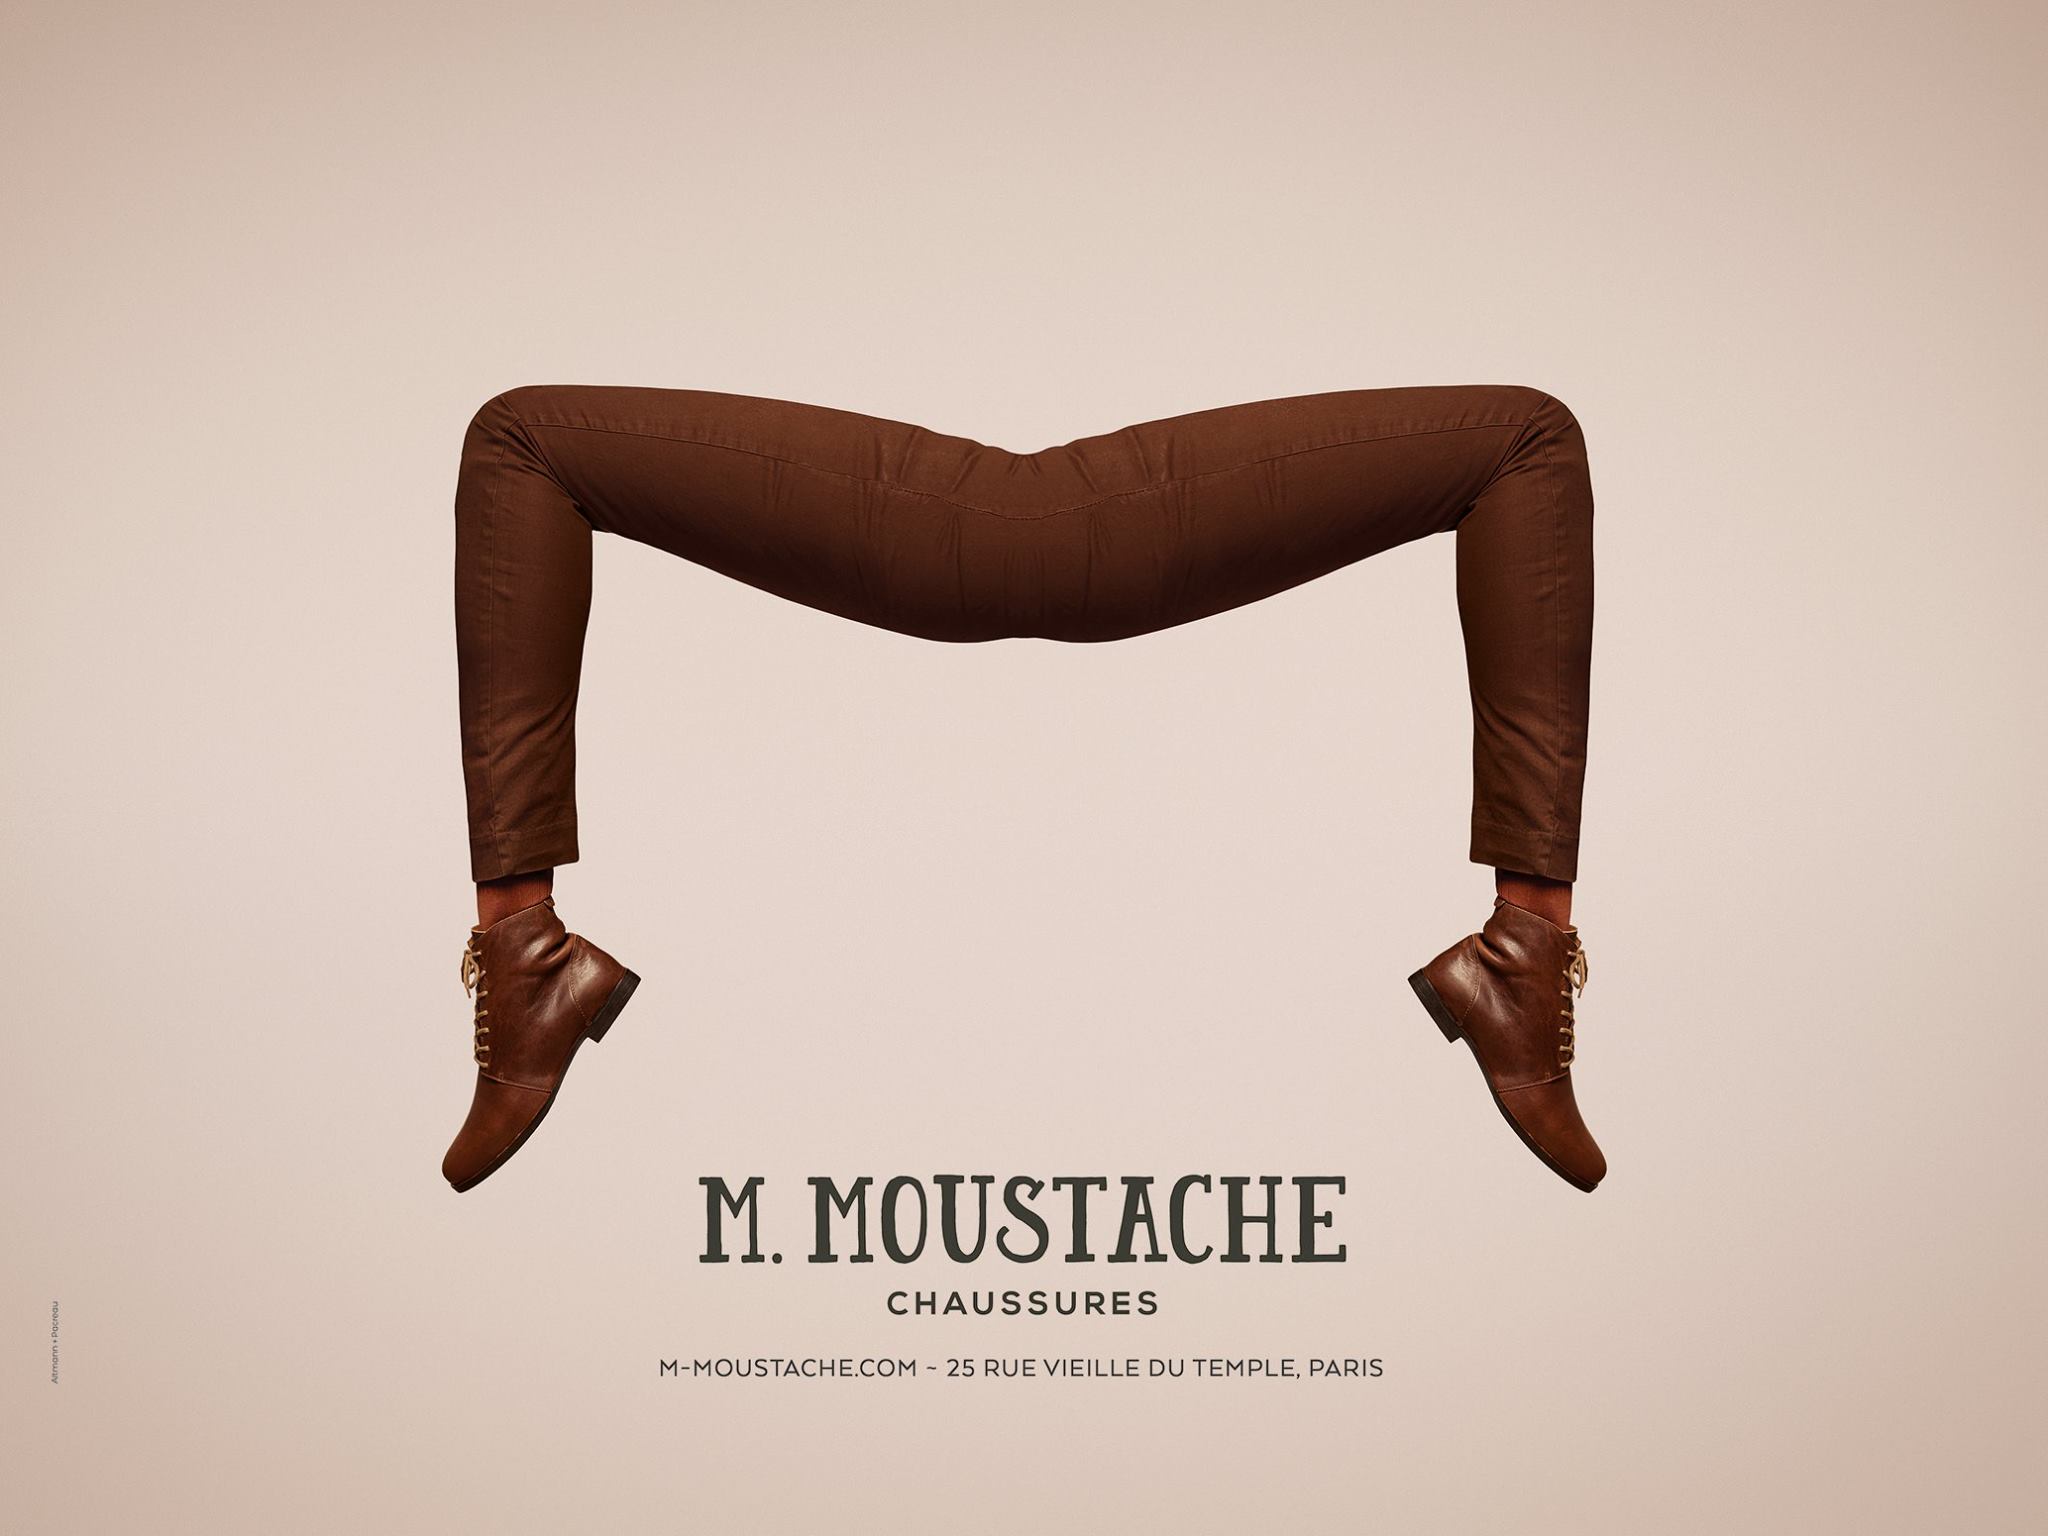 m-monsieur-moustache-chaussures-paris-rue-vieille-du-temple-publicite-affiche-agence-altmann-pacreau-1